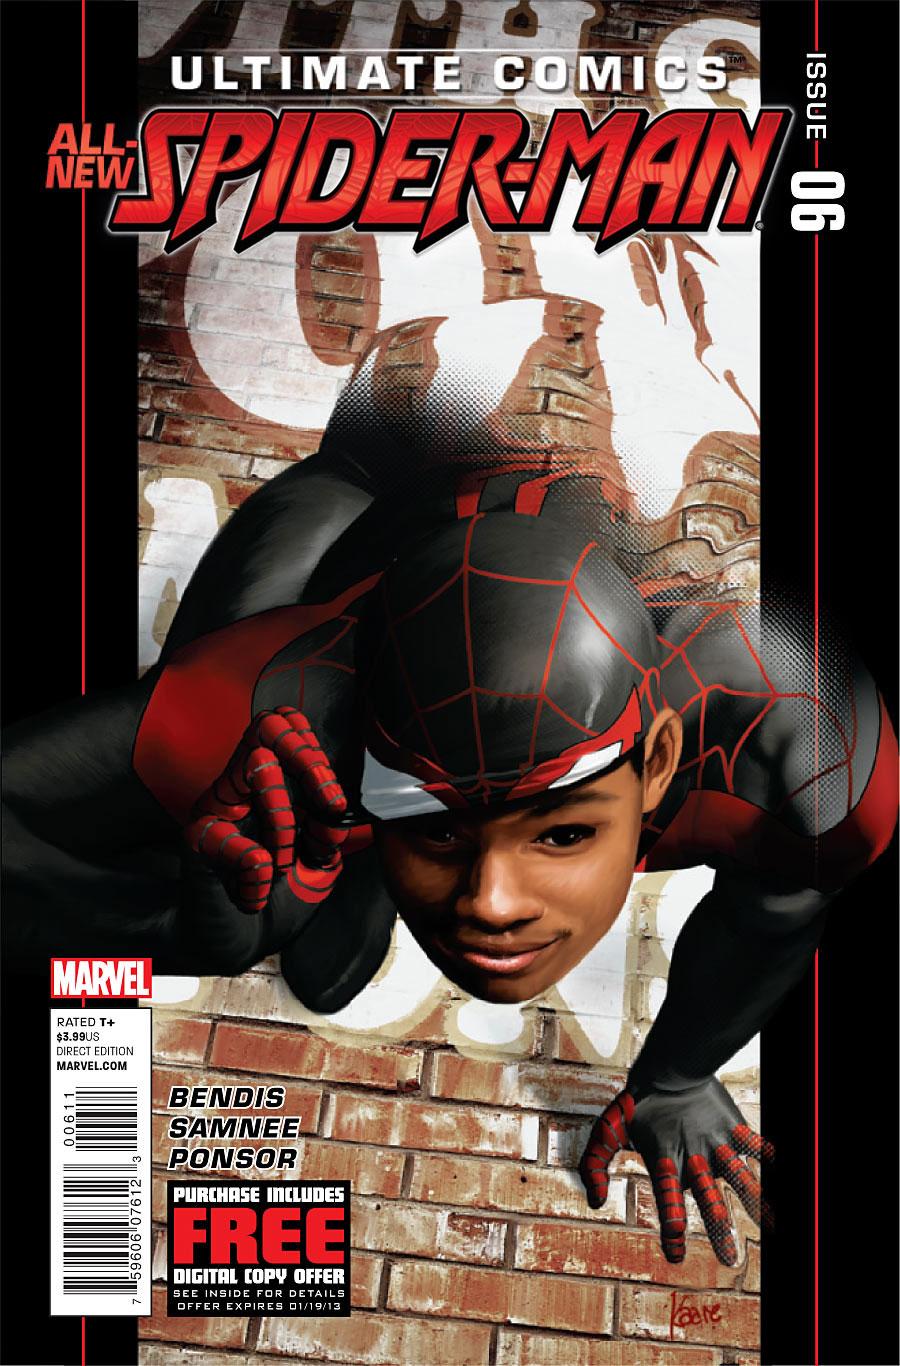 Ultimate Comics Spider-Man Vol. 2 #6